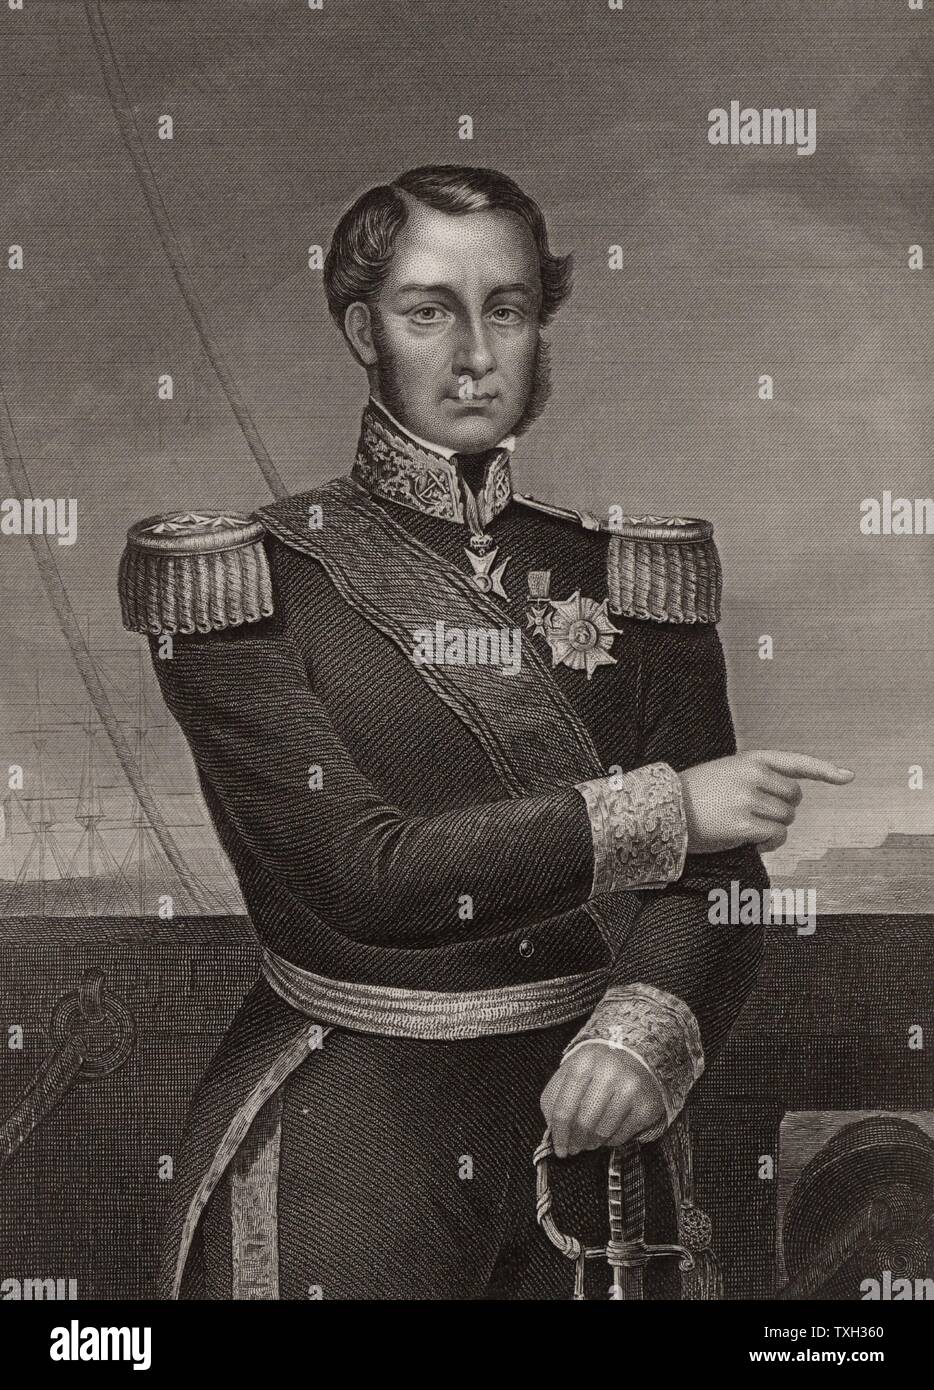 Ferdinand Alphonse Hameln (1796-1864), französischer Admiral. Während des Krimkrieges (Russisch-türkischen) Krieg (1853-1856) er die französische Flotte in Zusammenarbeit mit britischen geboten bei der Bombardierung von Odessa (1854). Gravur. Stockfoto